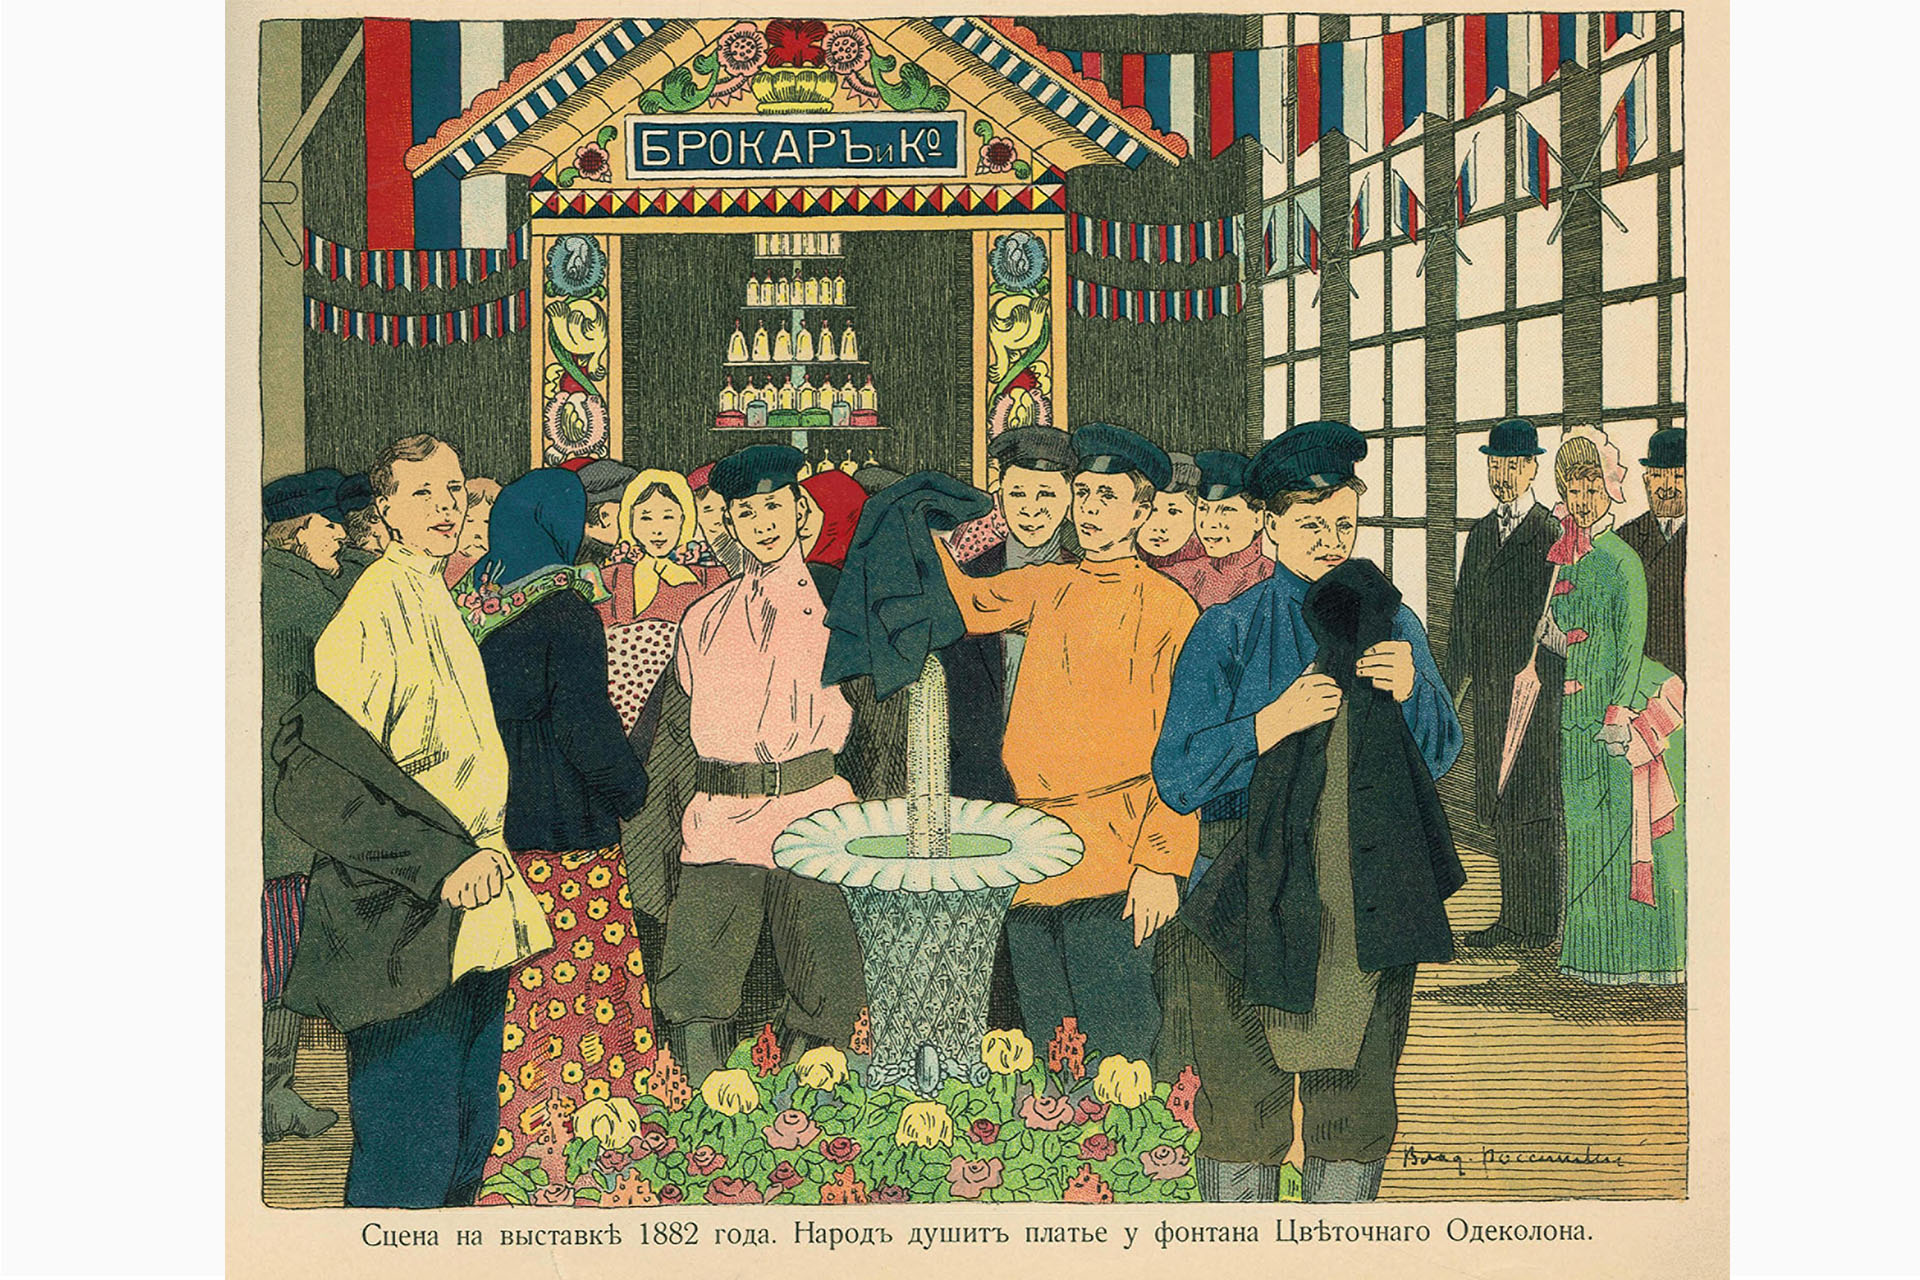 Иллюстрация из книги «Золотой юбилей парфюмерного производства товарищества Брокар и К° в Москве. 1864–1914», 1915 год